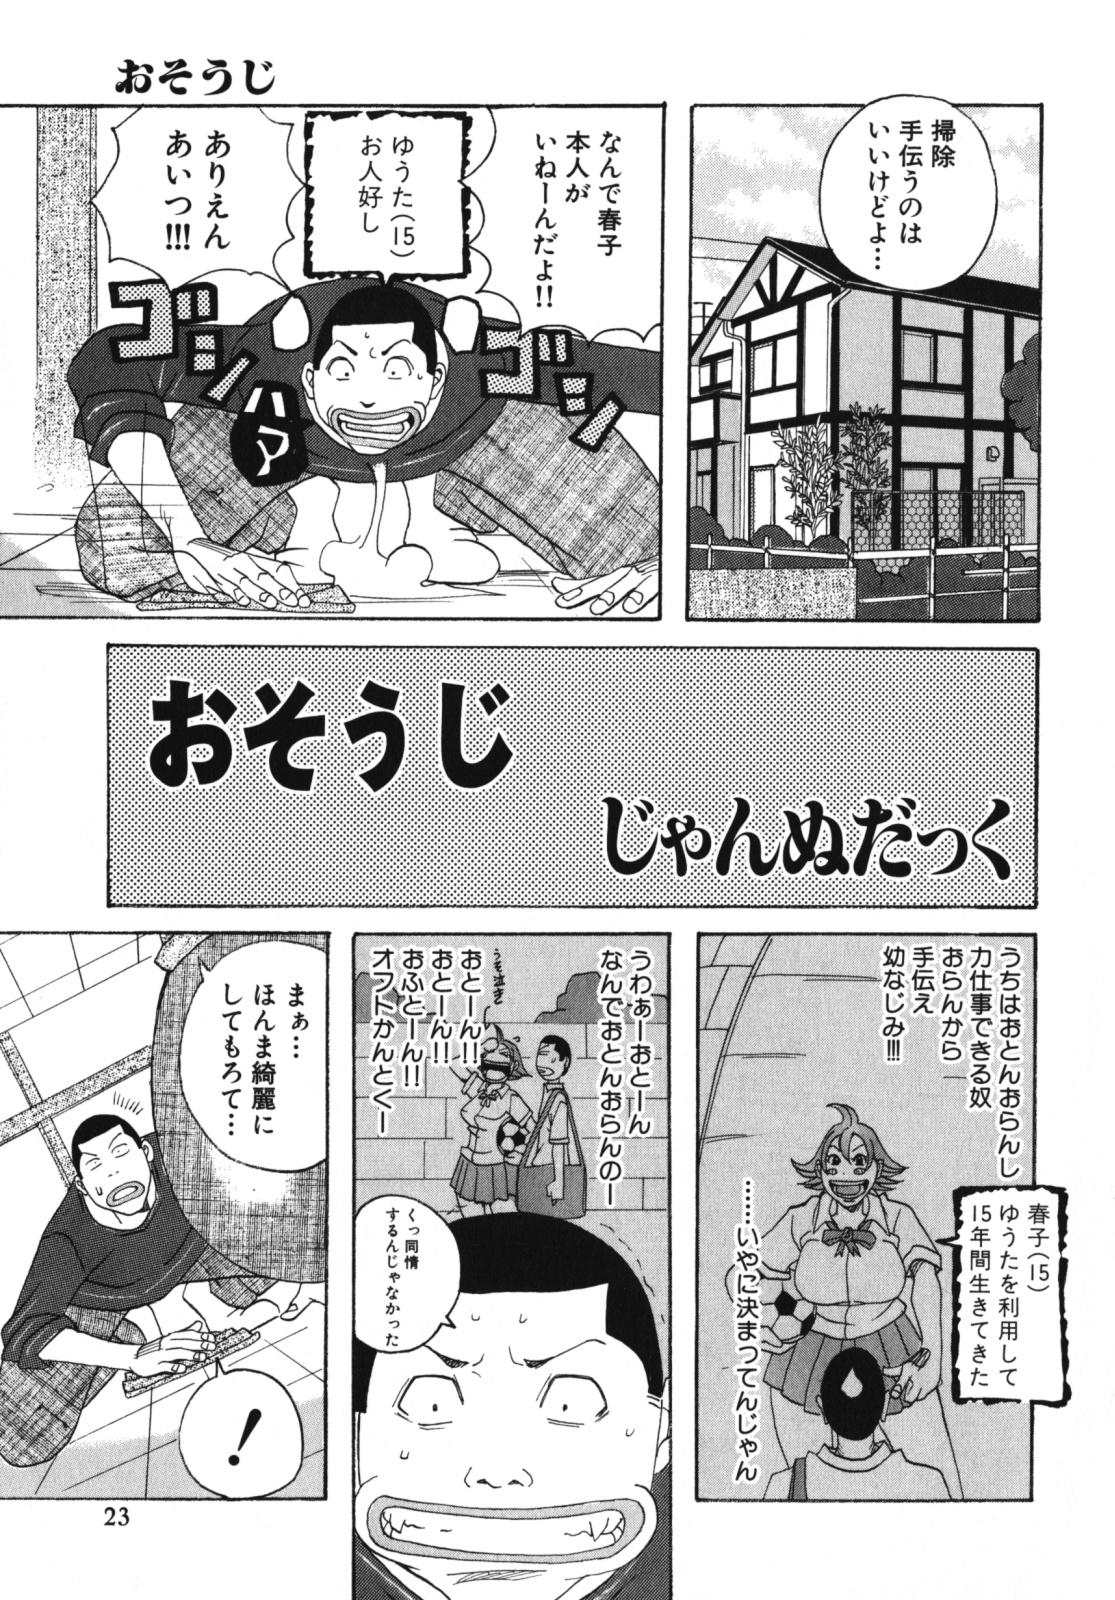 Nakadashi, Shitene Geki-yaba! Anthology Vol. 3 Inbo Ryouran Tokushuu!! 24